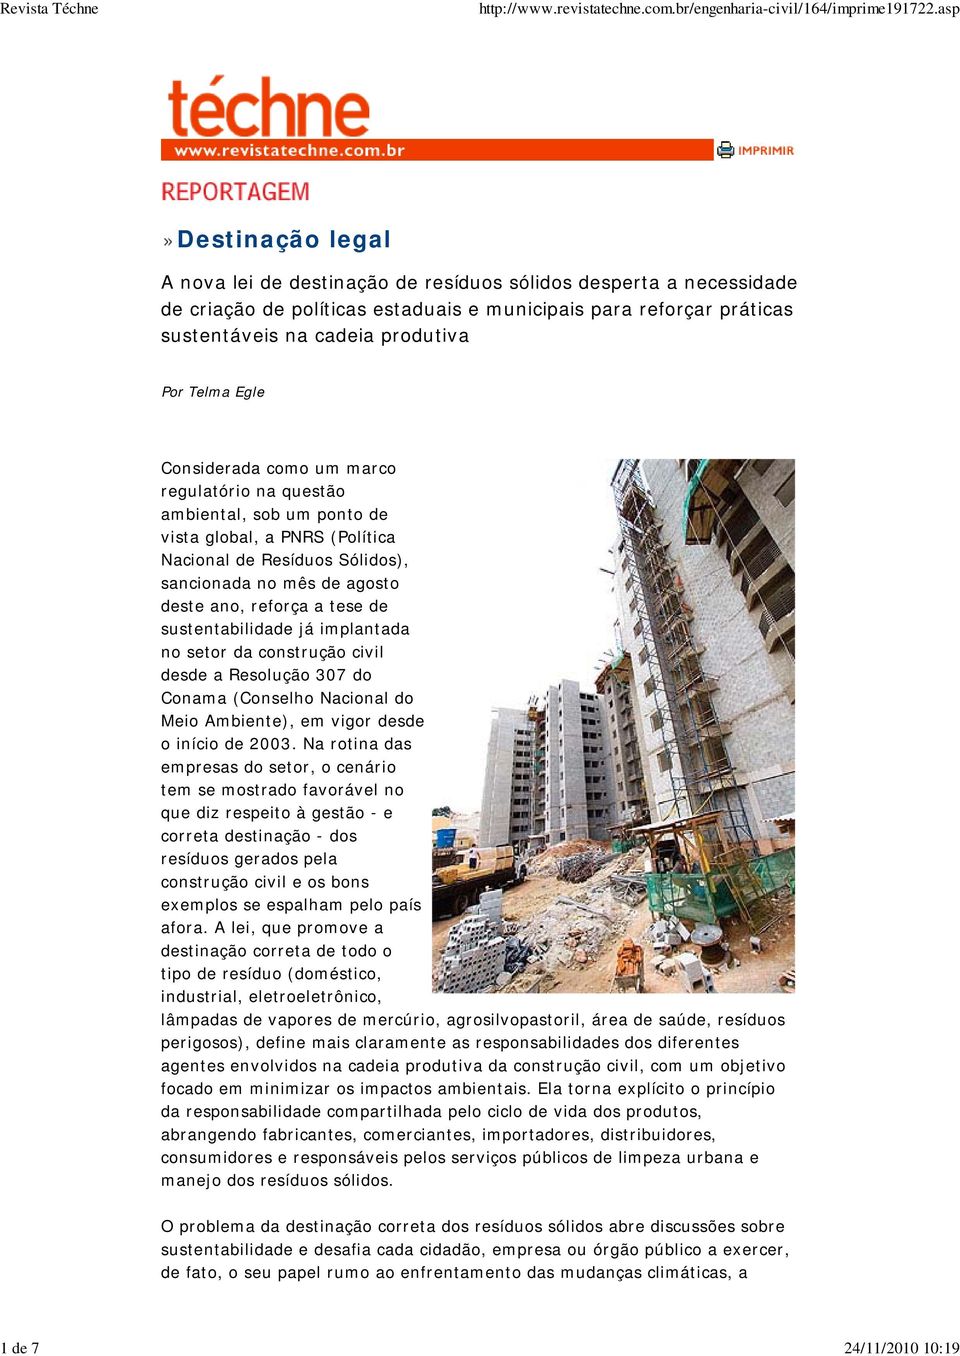 sustentabilidade já implantada no setor da construção civil desde a Resolução 307 do Conama (Conselho Nacional do Meio Ambiente), em vigor desde o início de 2003.